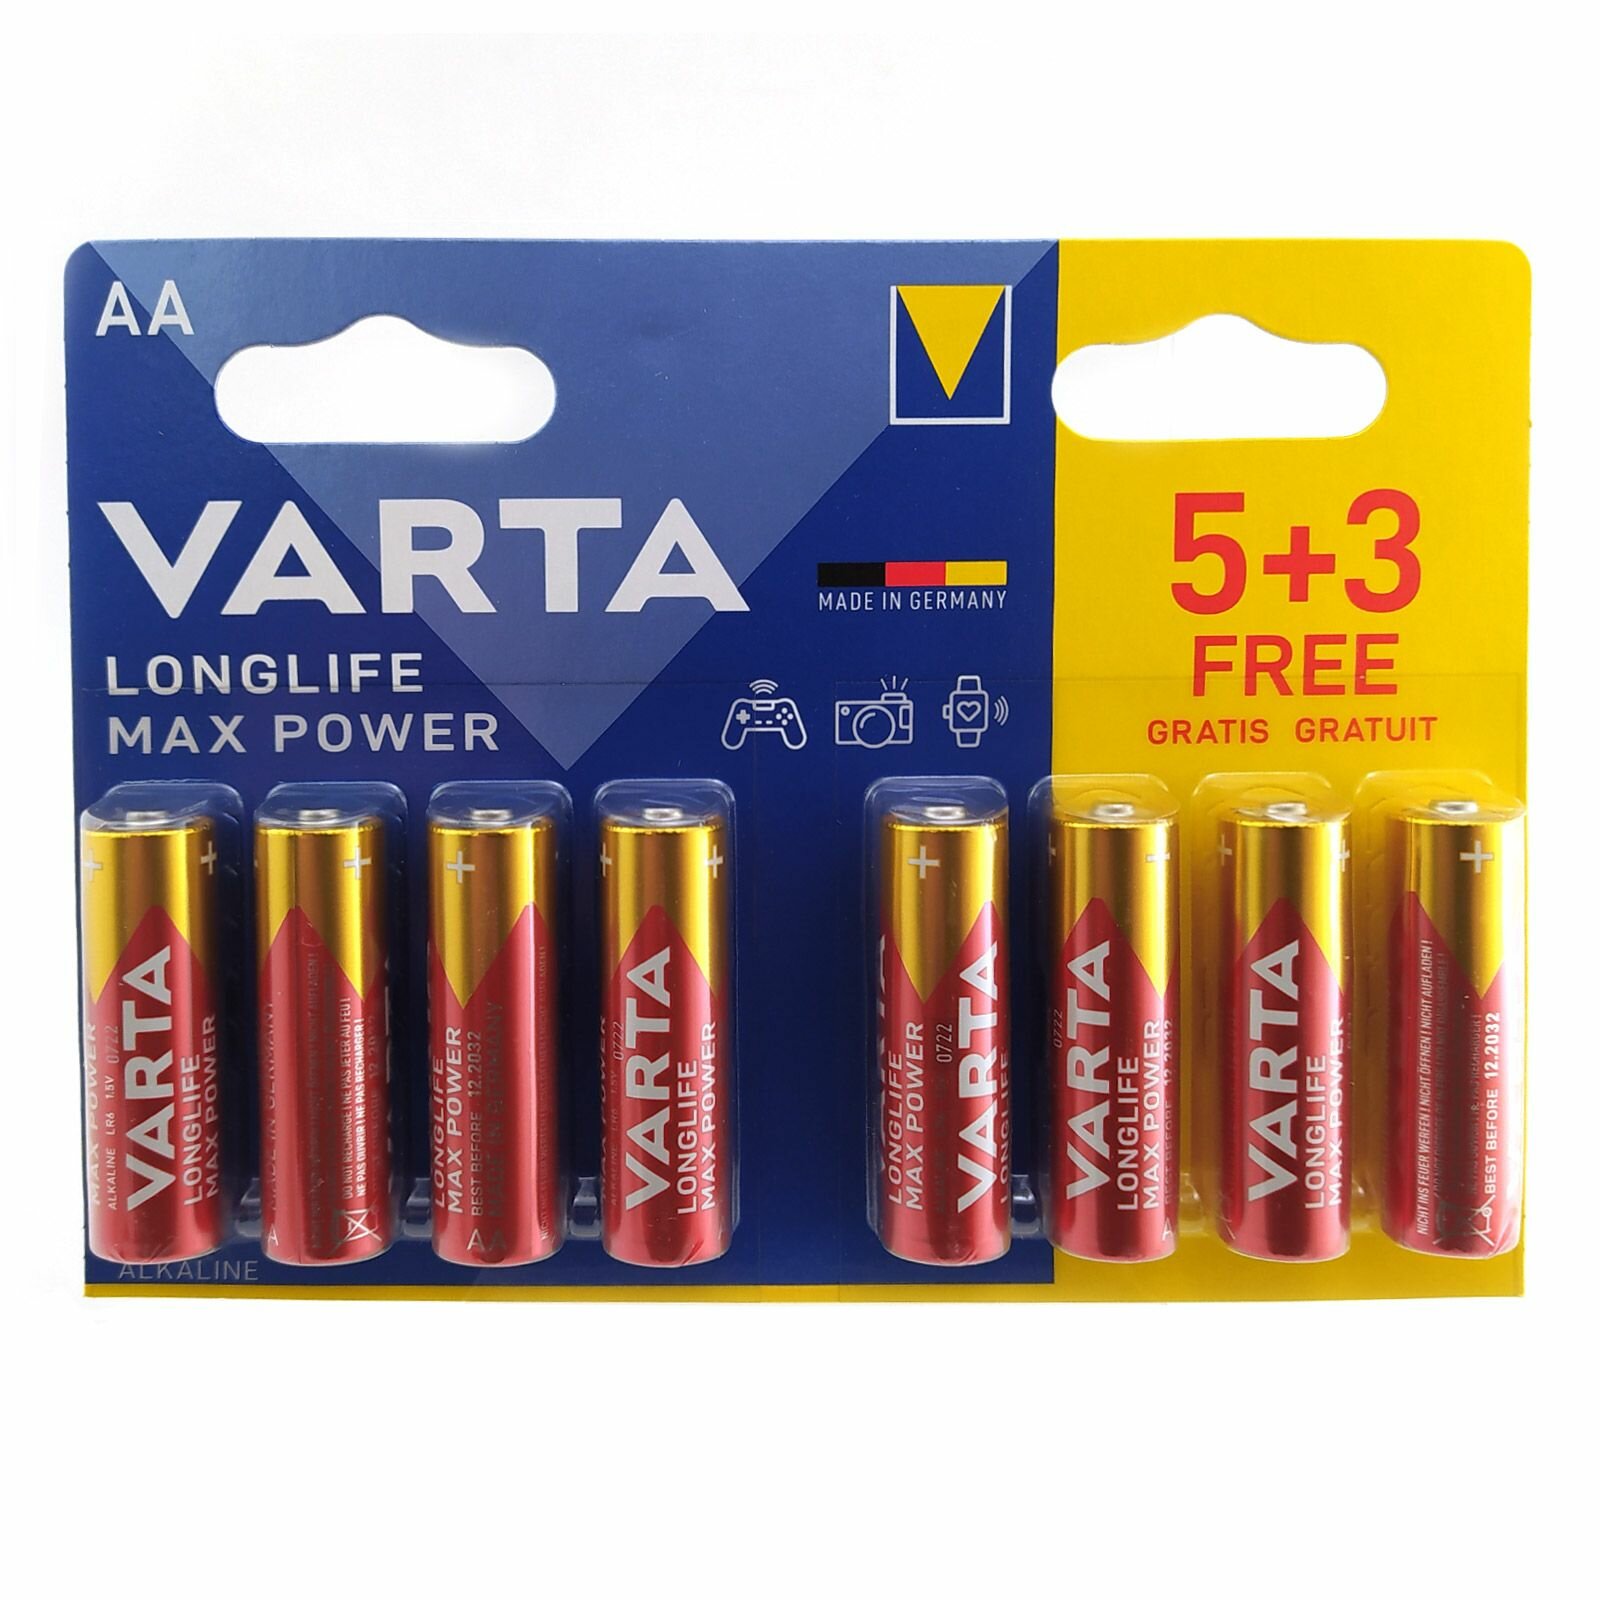 Батарейка (16шт) щелочная VARTA LR6 AA LongLife Max Power 1.5В (5+3)*2